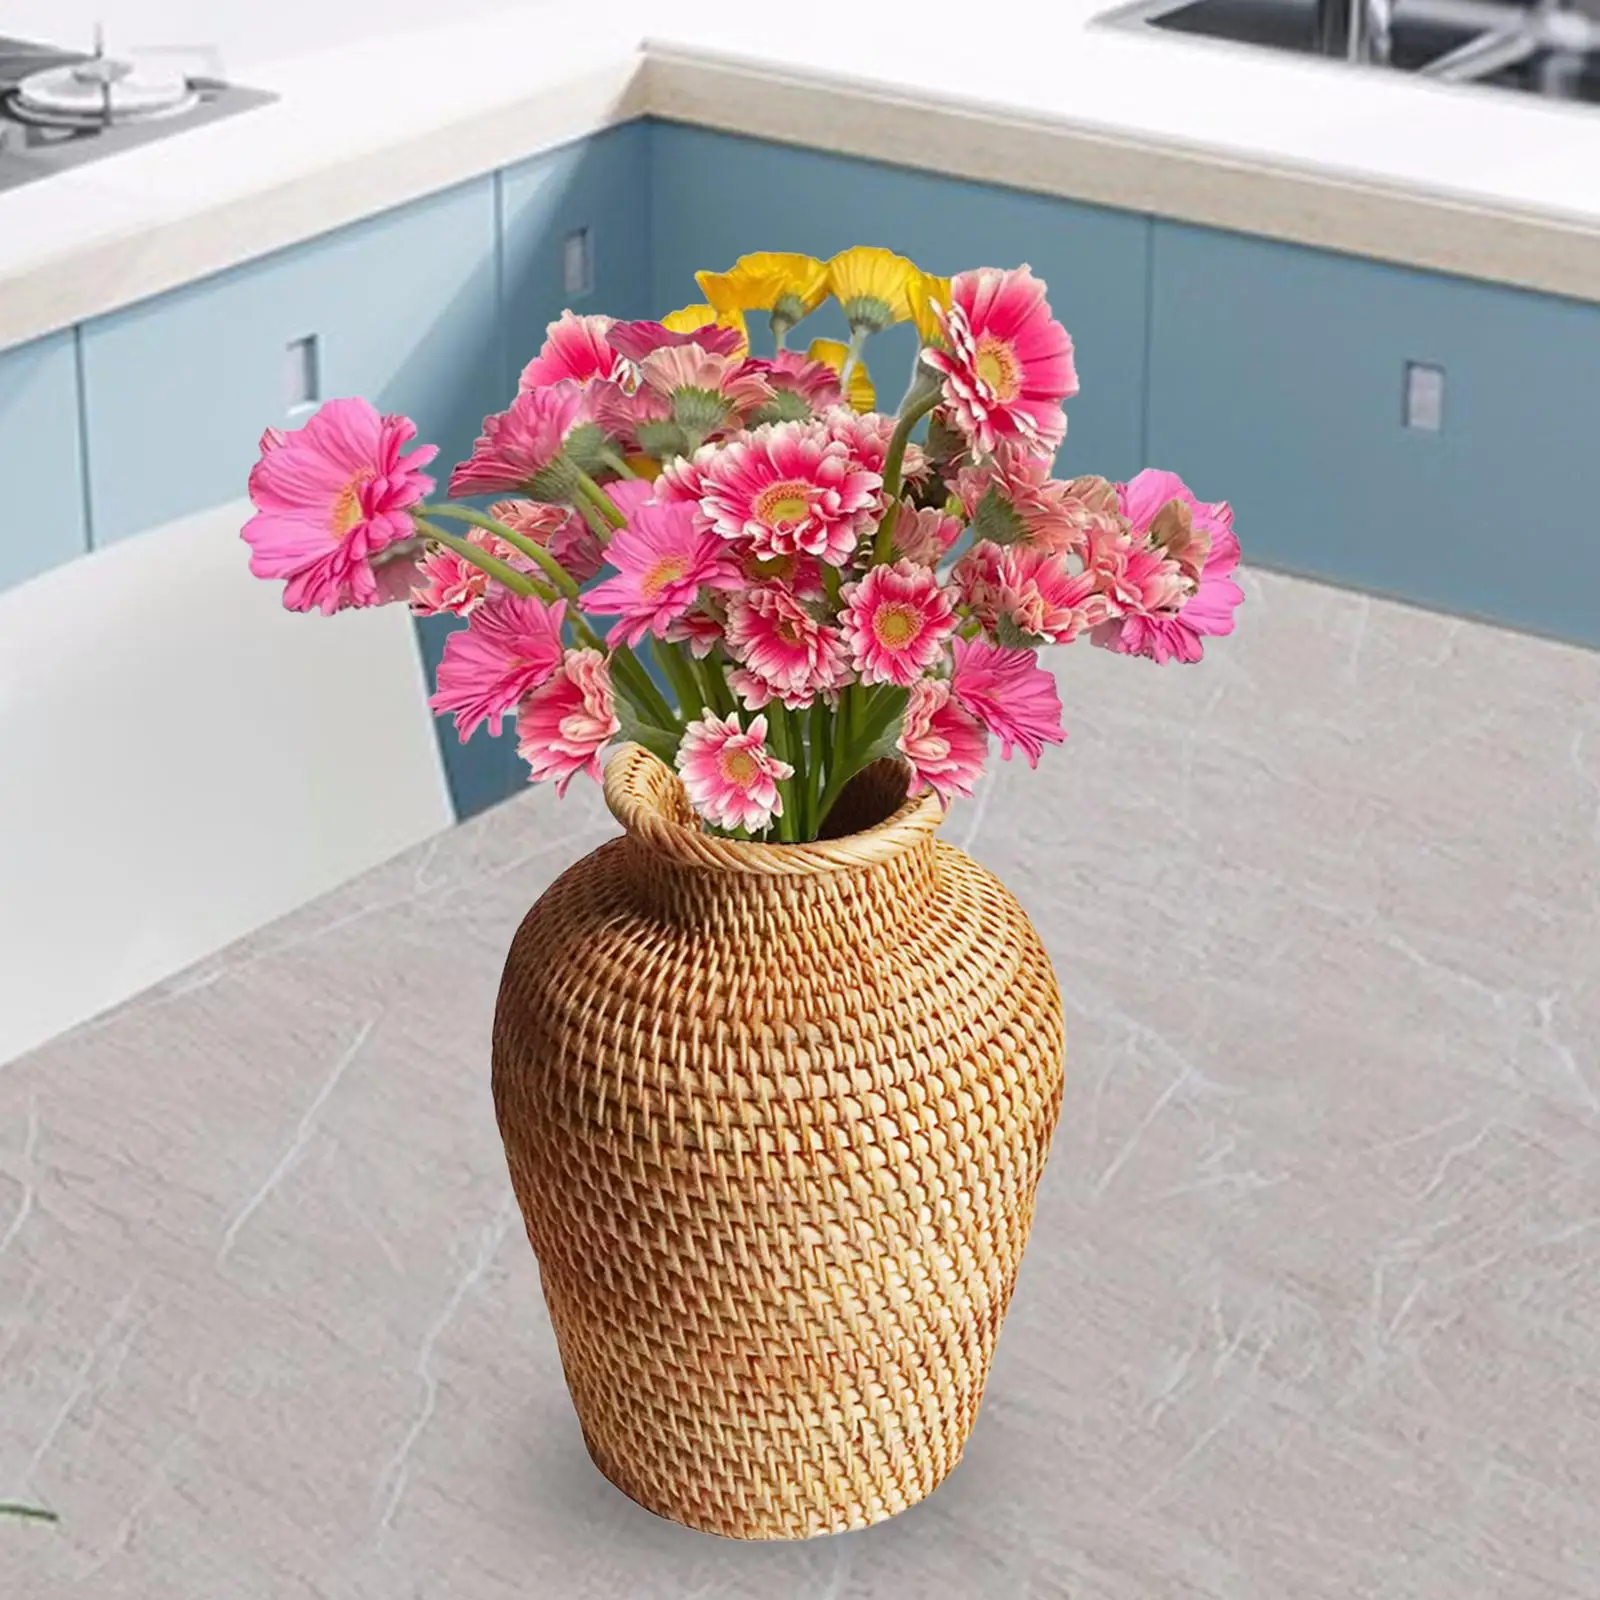 Handwoven Rattan Flower Basket Bottle Storage Basket Dried Flower Vase for Restaurant Drawing Room Cafe Desk Home Decoration